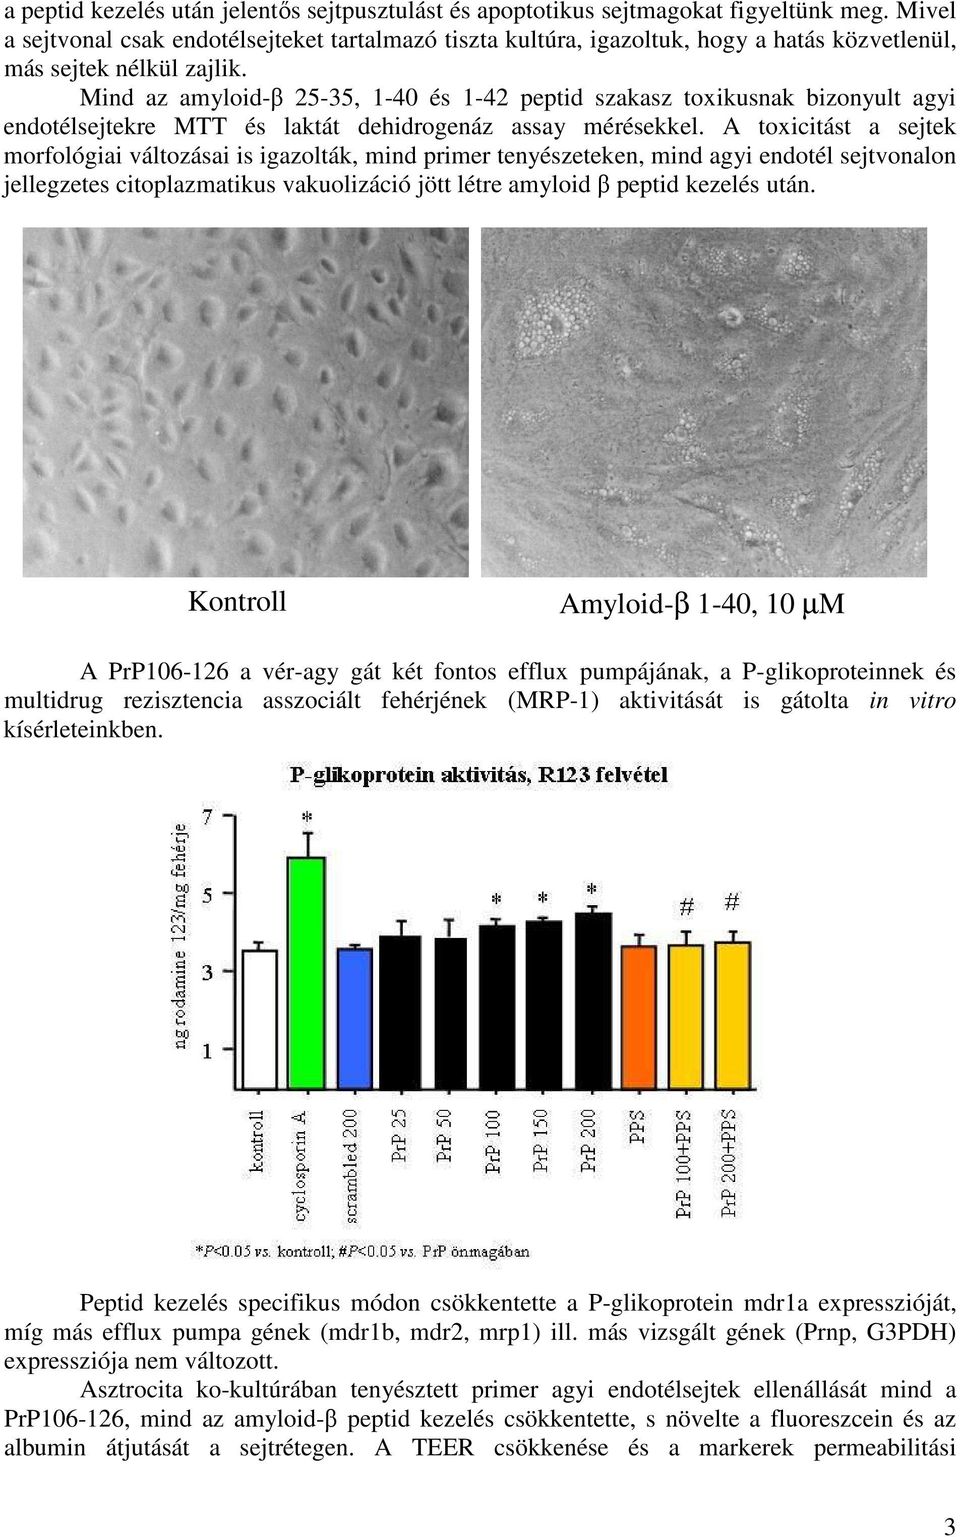 Mind az amyloid-β 25-35, 1-40 és 1-42 peptid szakasz toxikusnak bizonyult agyi endotélsejtekre MTT és laktát dehidrogenáz assay mérésekkel.